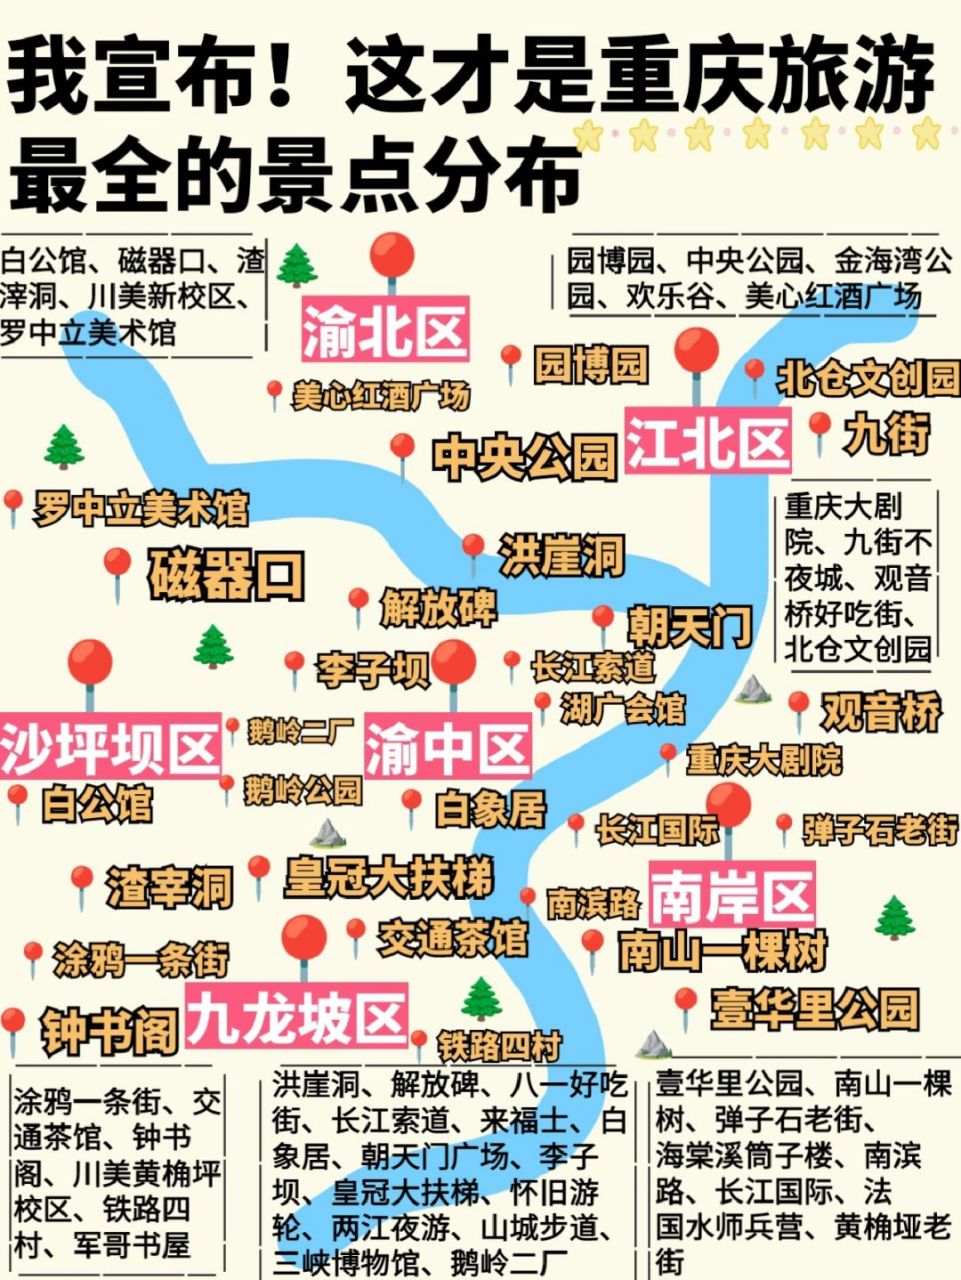 重庆旅游景点地图9015这才是最全重庆景点 有要来重庆的小伙伴吗